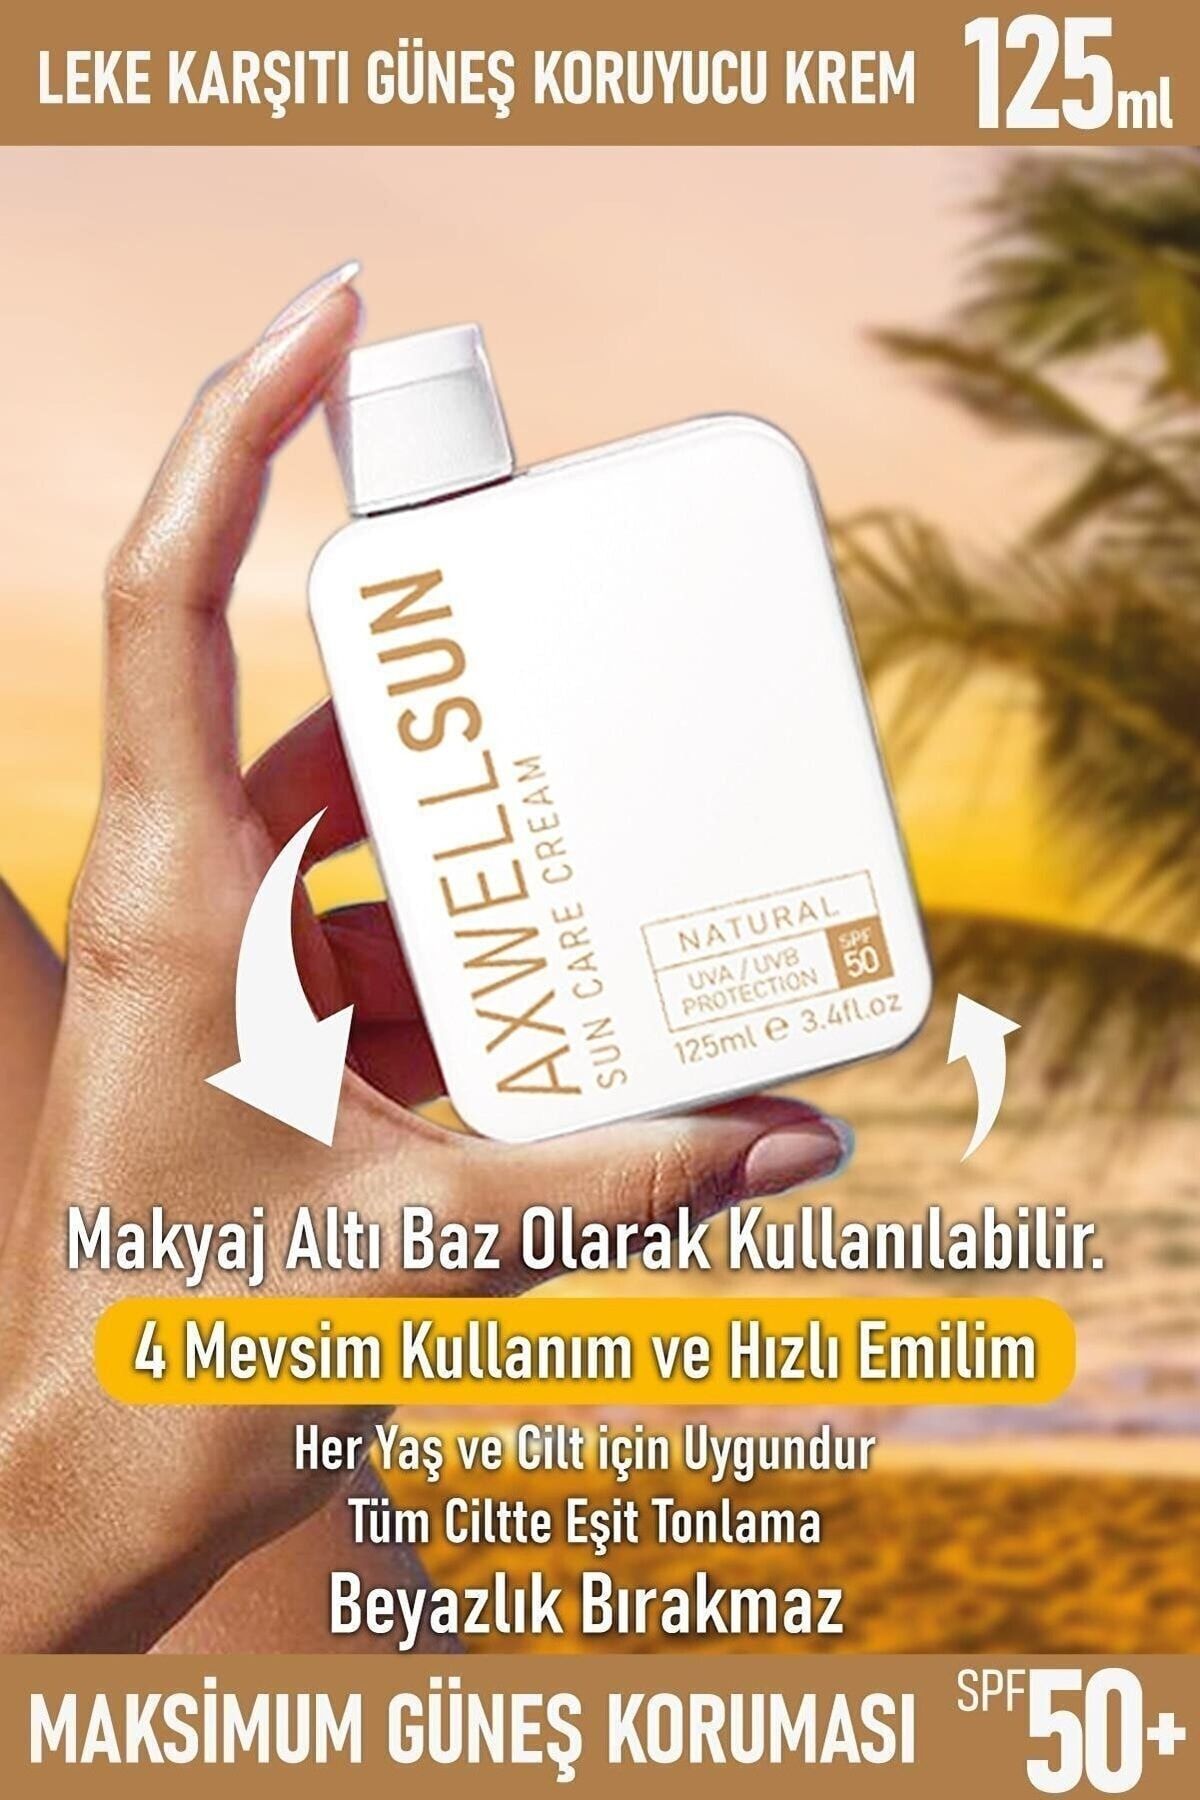 AXWELL Premium Sun Care Cream - Leke Karşıtı Güneş Koruyucu Krem Spf50 125ml